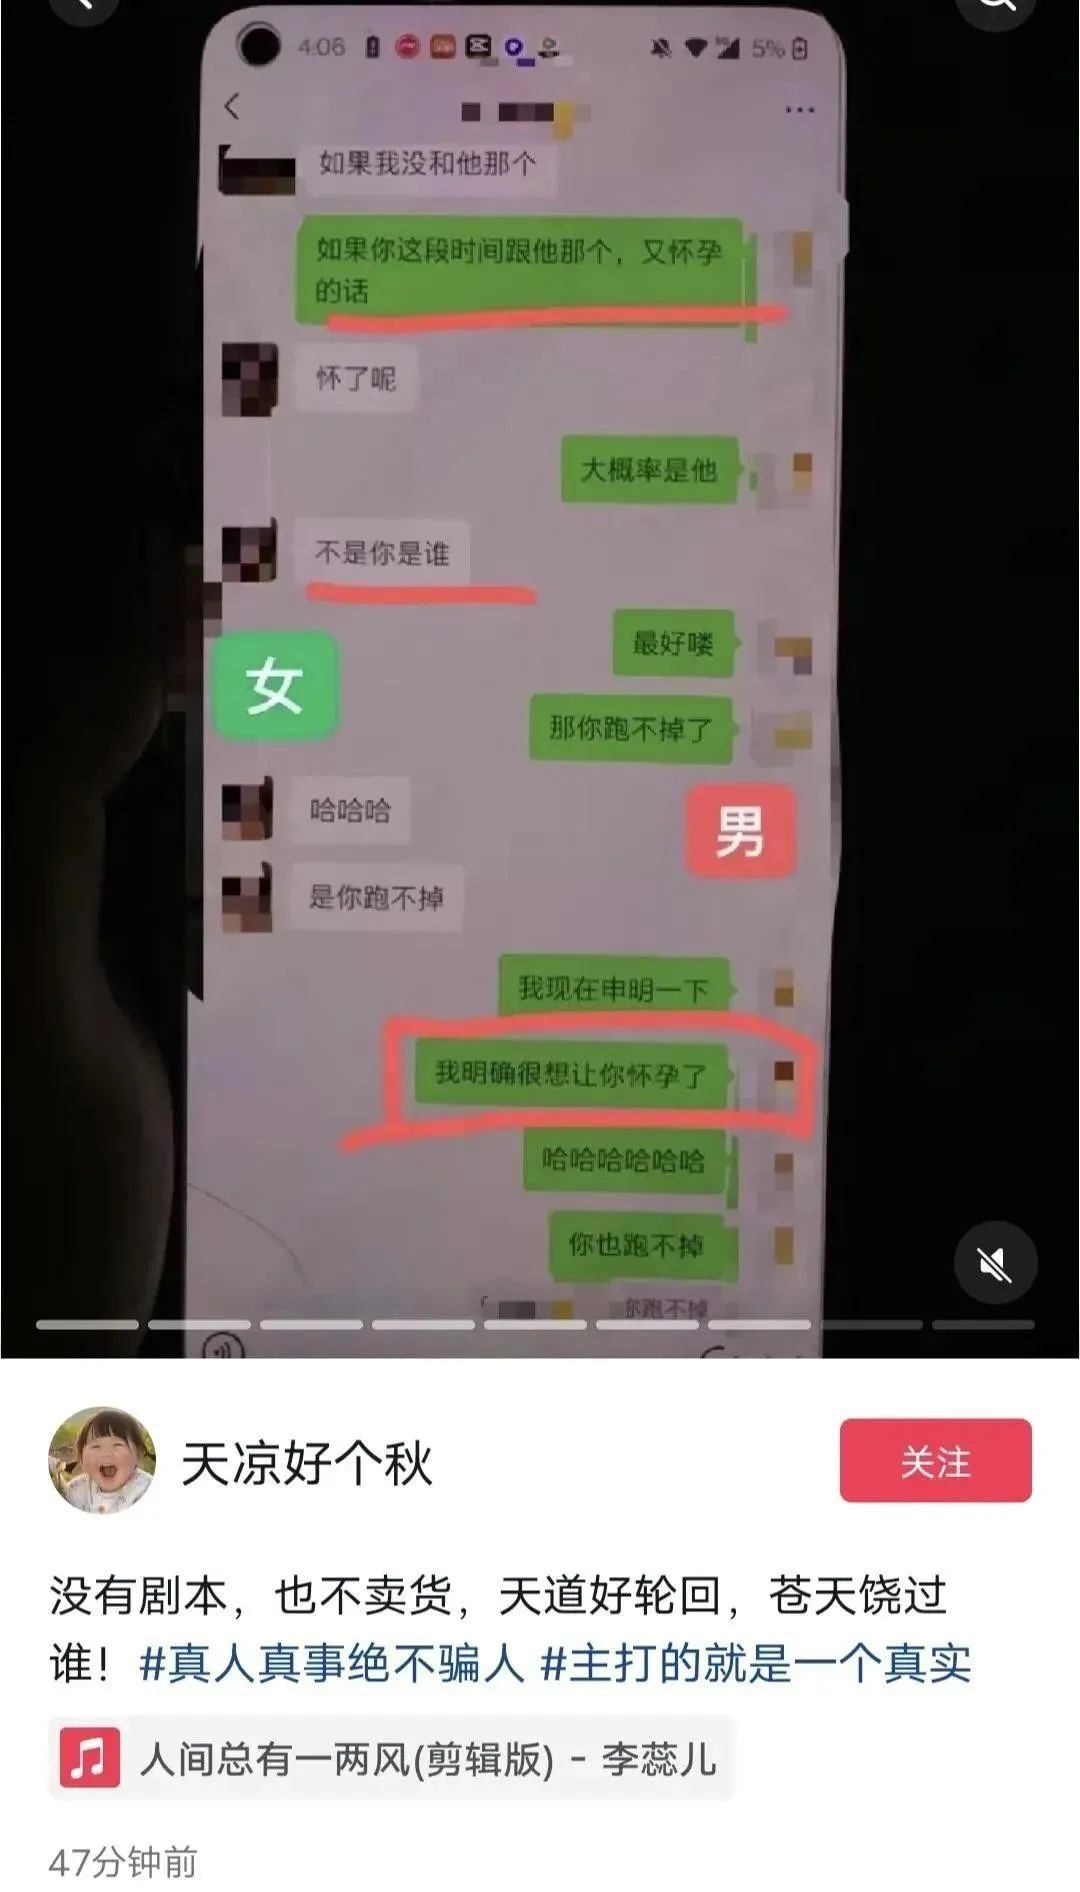 广州最大绿帽男微信聊天记录：老婆出轨情人五年啪啪啪250次 - 奇点世界 | 奇点世界